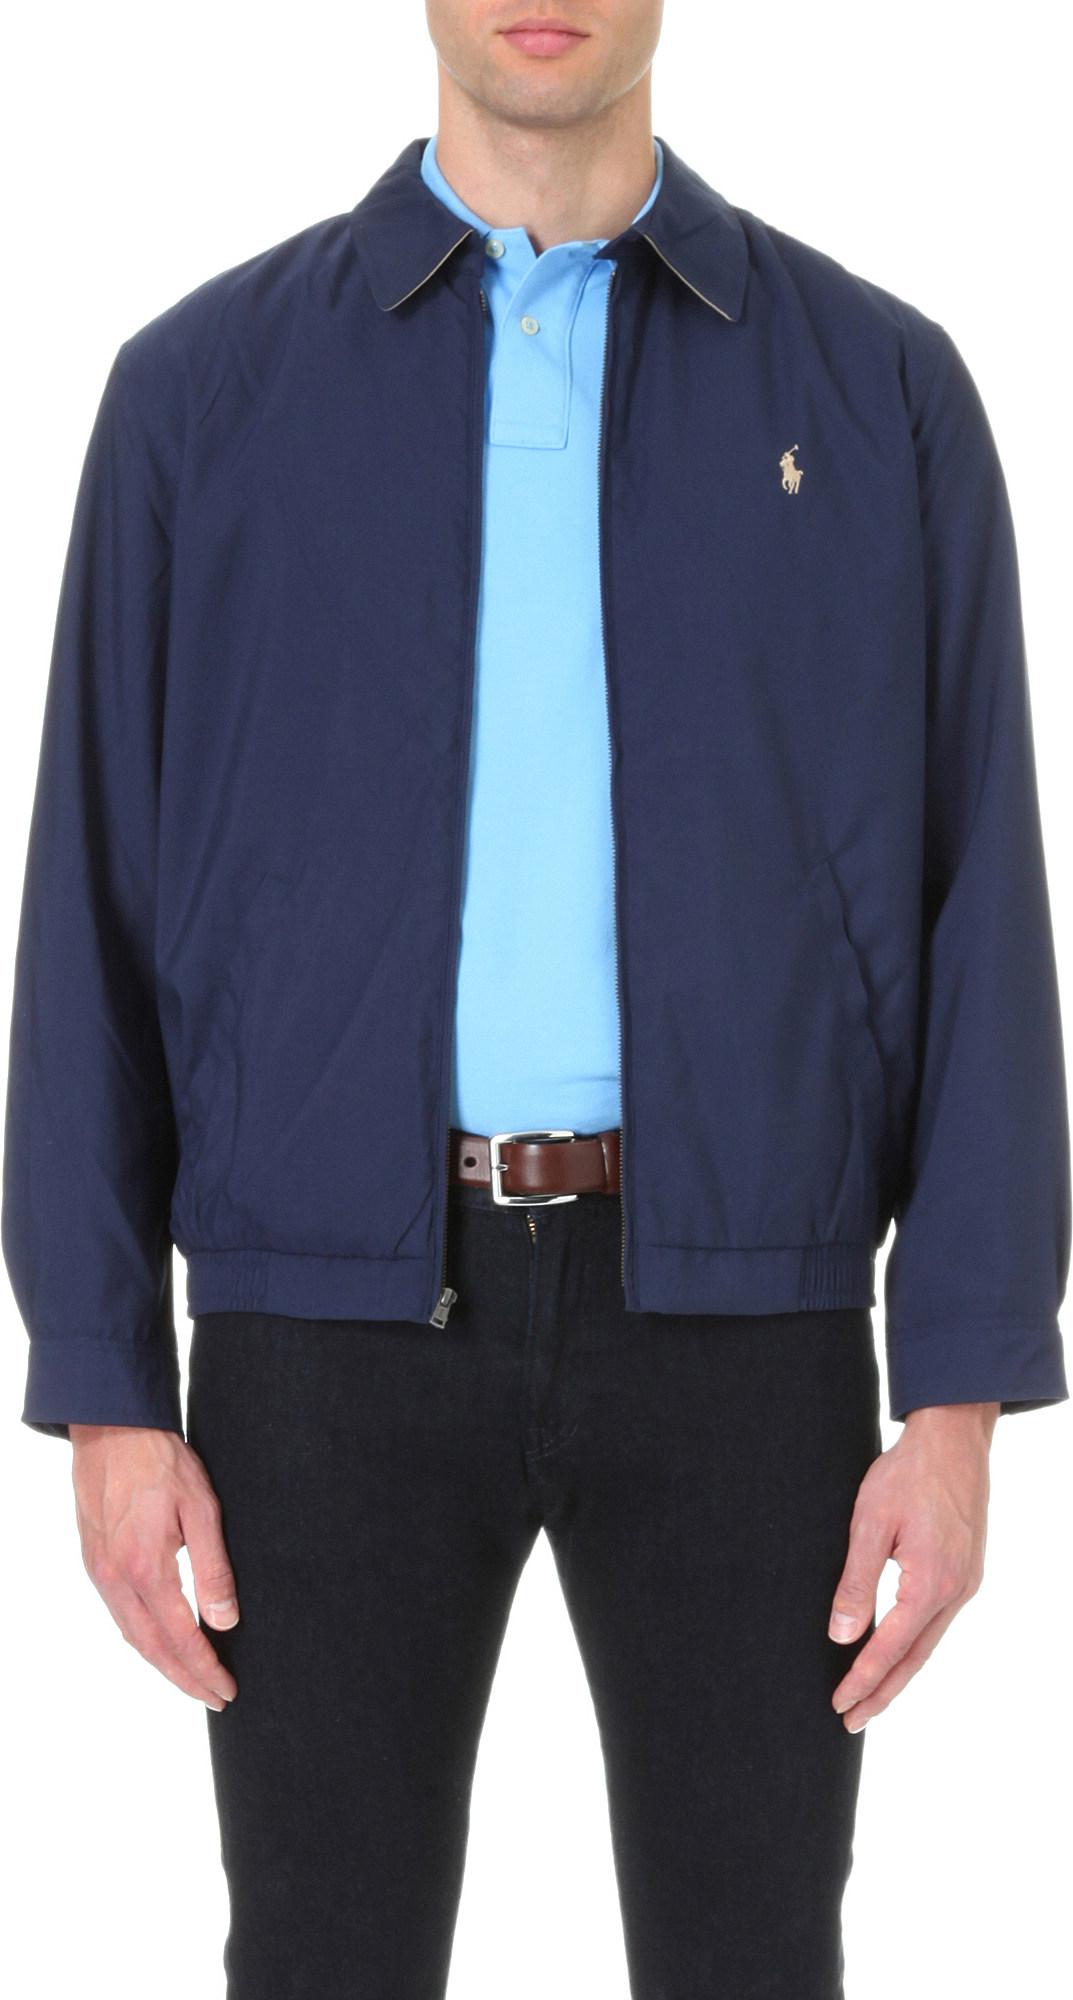 Lyst - Polo Ralph Lauren New Fit Bi-swing Windbreaker Jacket in Blue ...